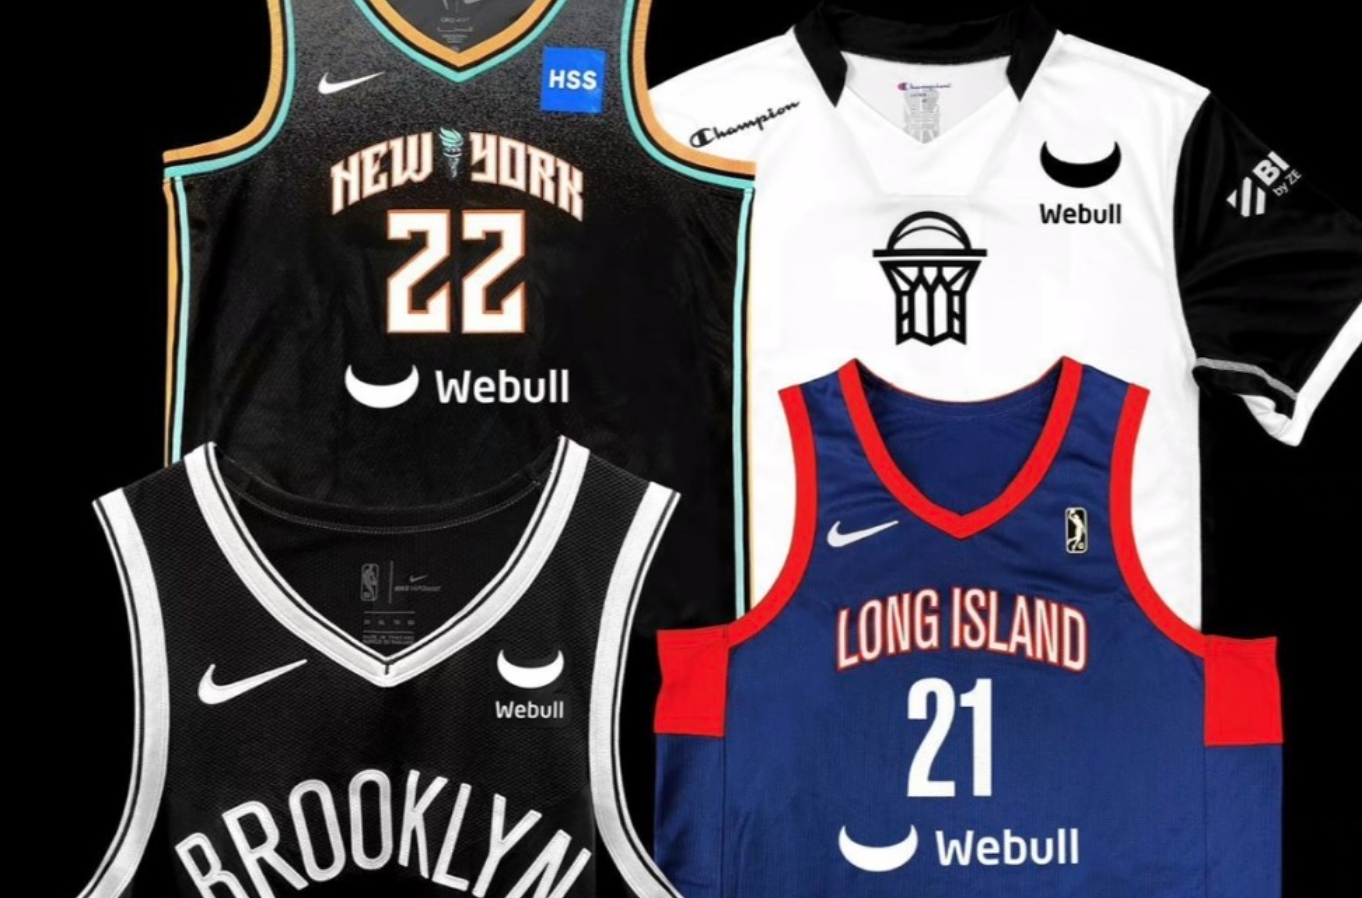 证券交易平台Webull成为布鲁克林篮网新球赛季衣赞助商